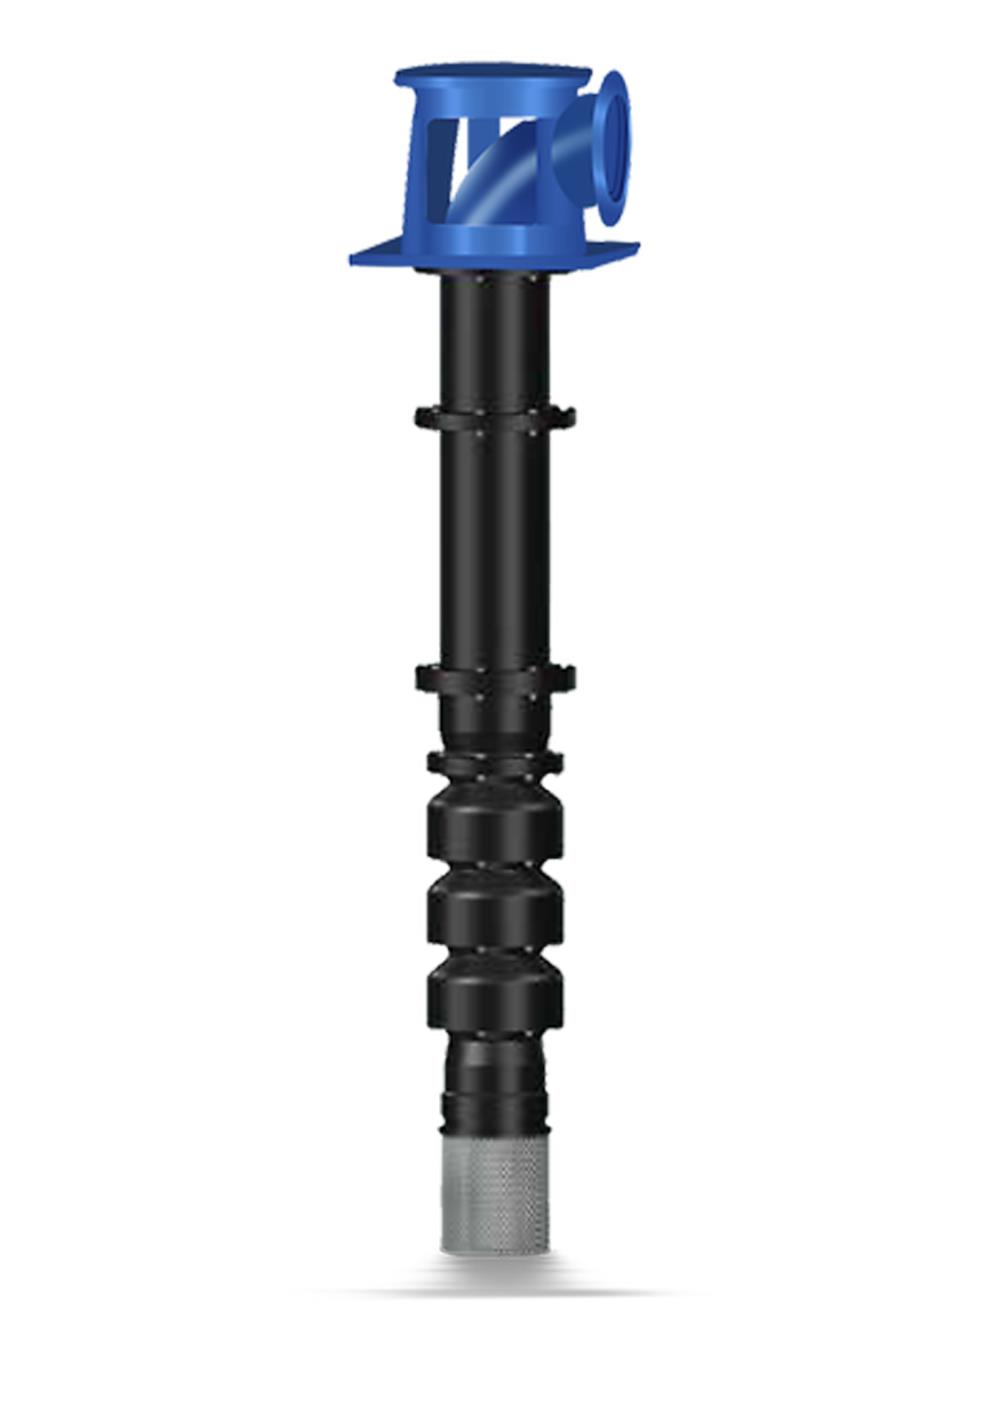 B12B,KSB,KSB PUMP,Pumps, Valves and Accessories/Pumps/Vertical Pump